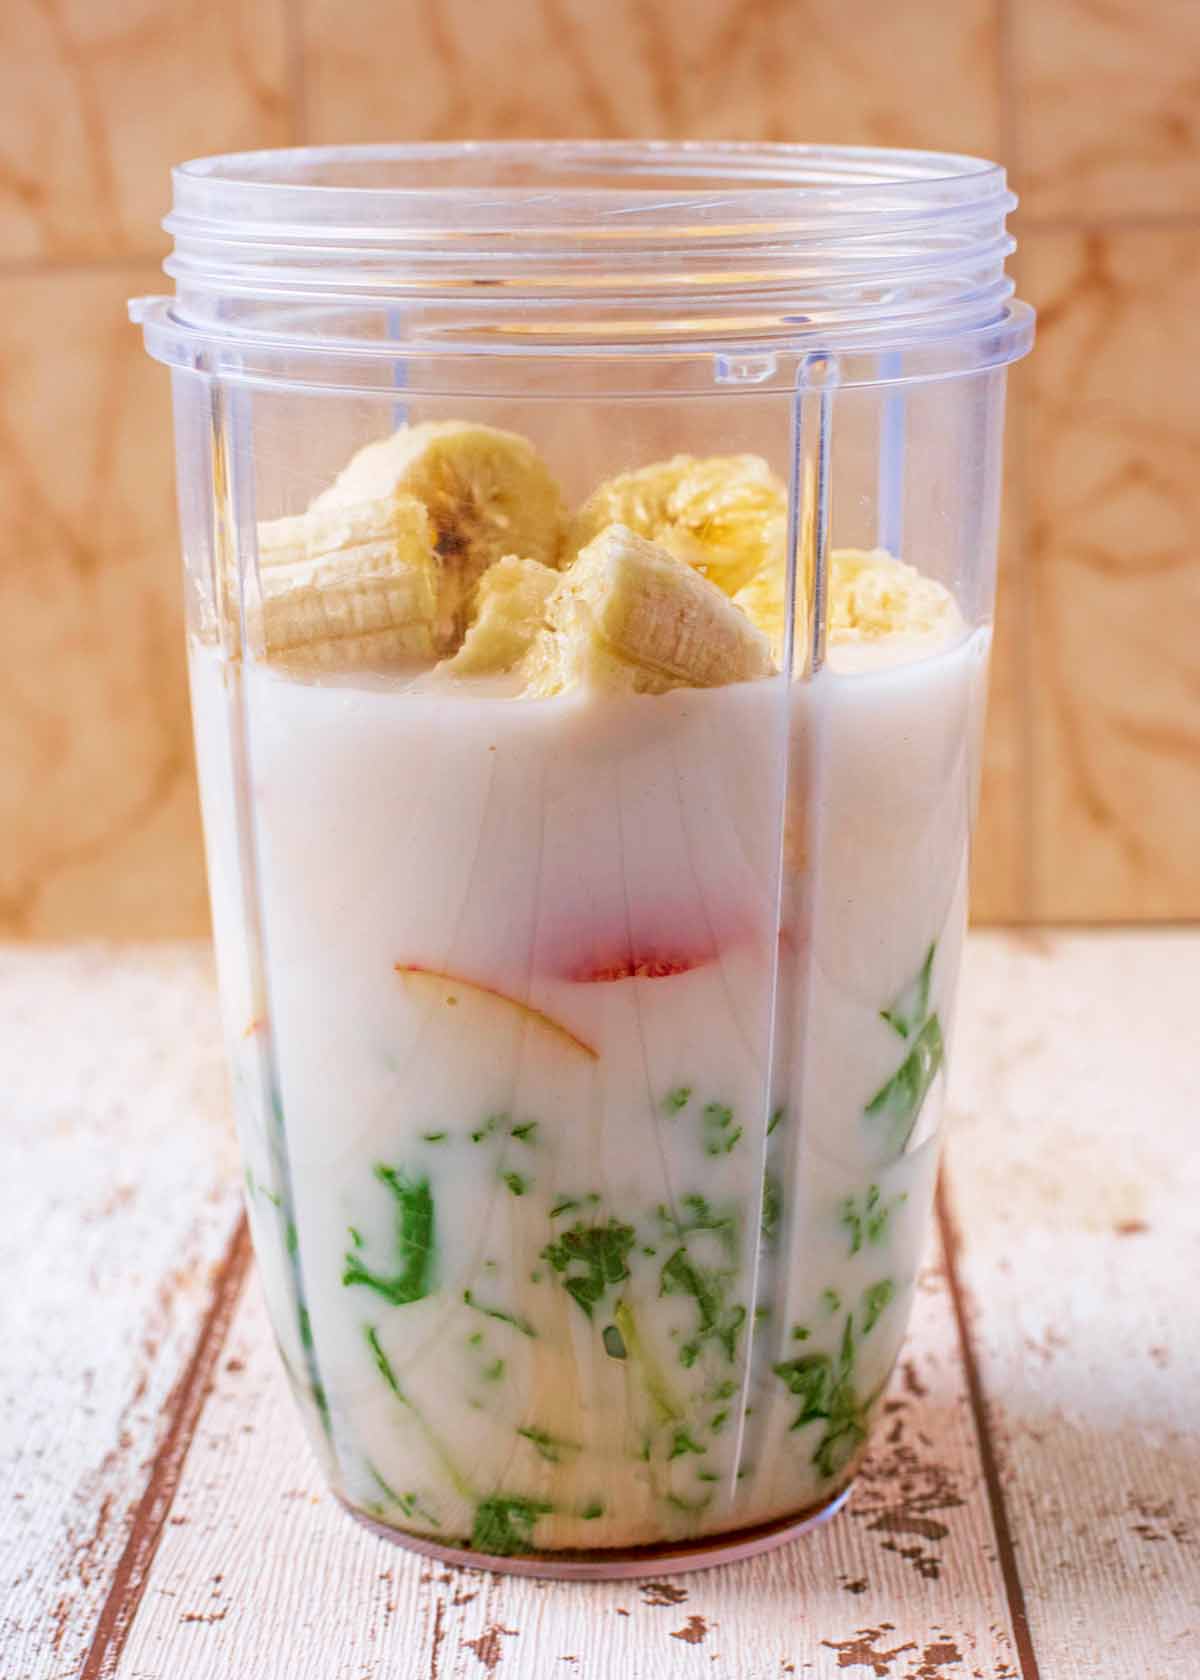 Milk, fruit and kale in a blender jug.